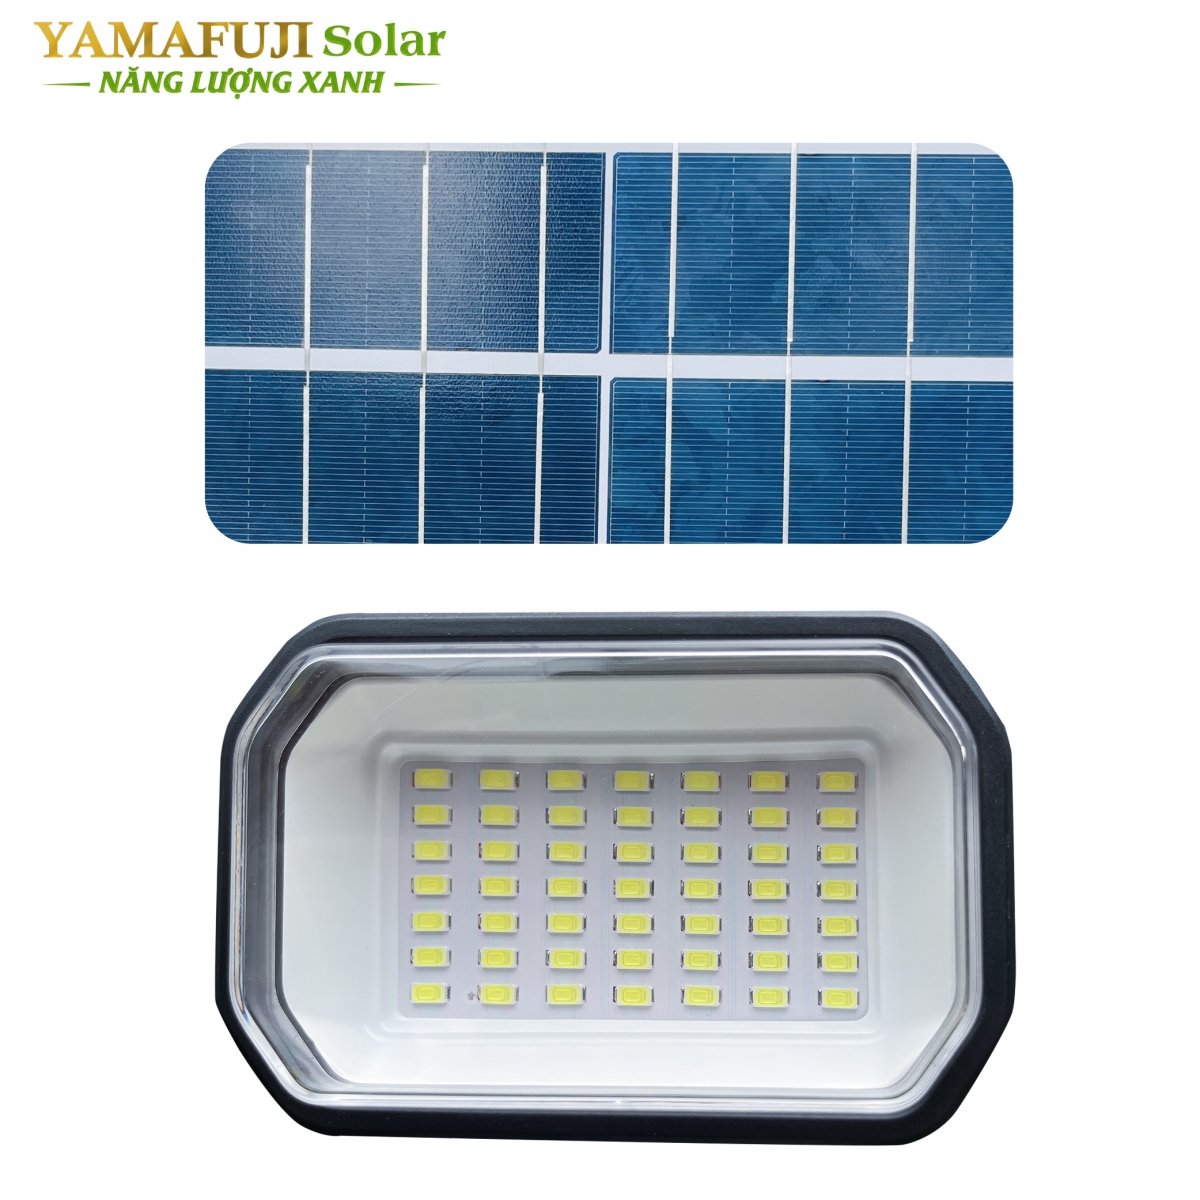 Đèn năng lượng mặt trời Yamafuji Solar ISGL08A-400W chính hãng